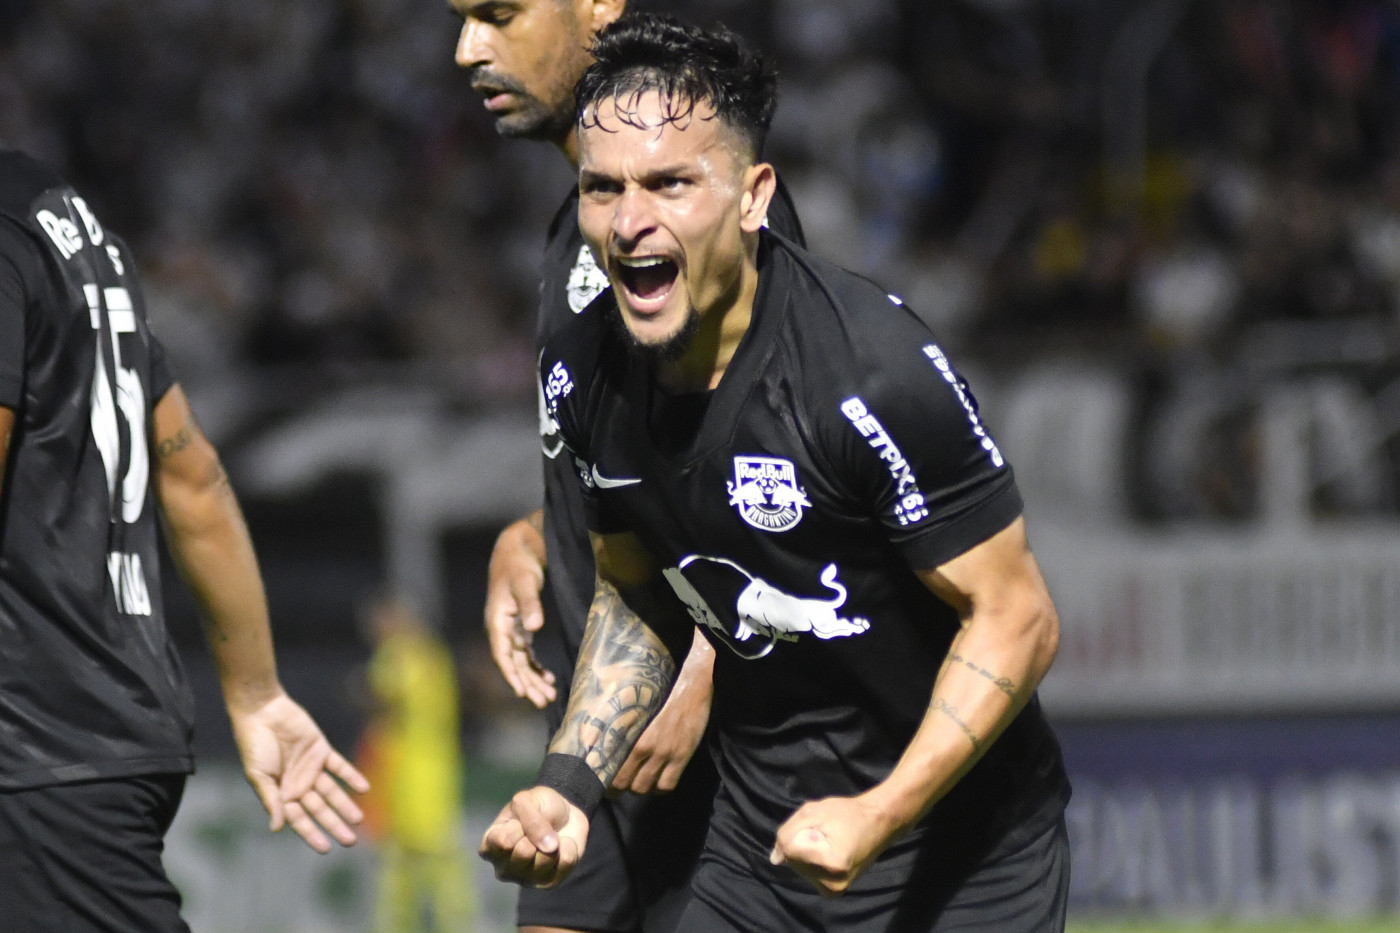 Palmeiras enfrenta hoje o Red Bull Bragantino pelo Paulistão